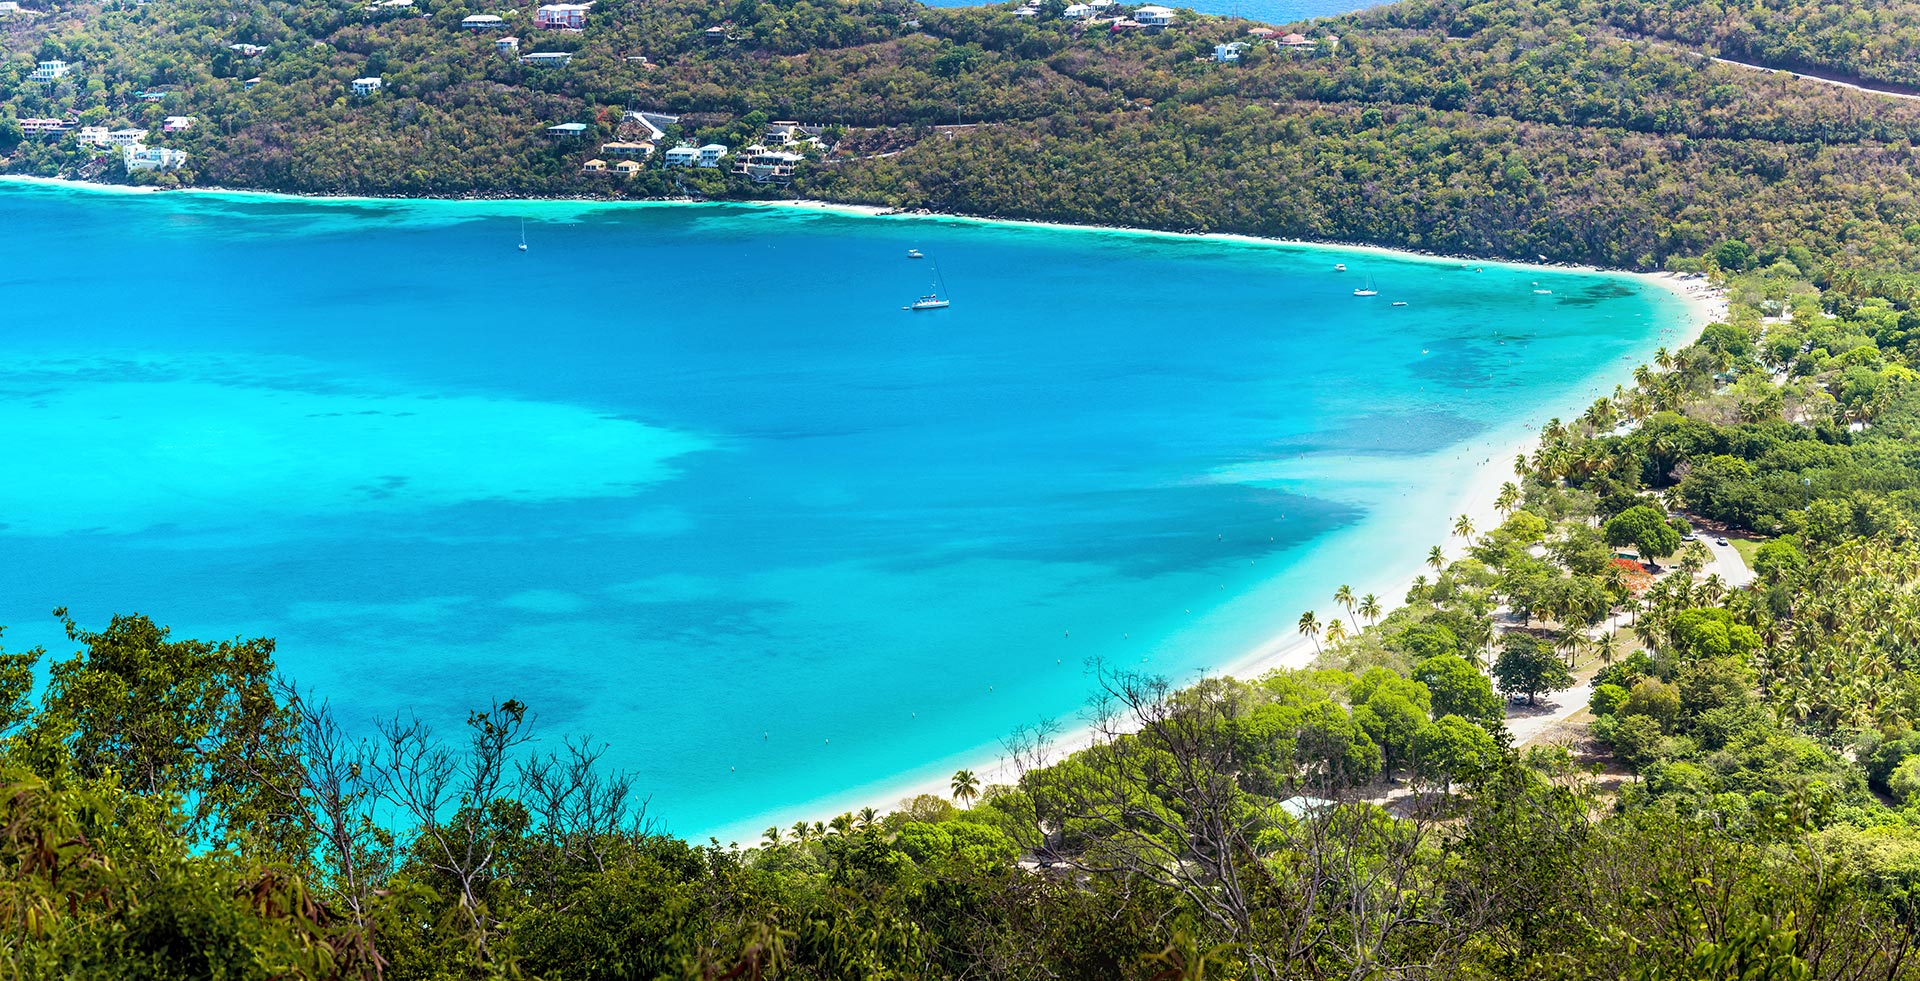 Coki Beach es una playa de arena blanca en el lado noreste de la isla Saint Thomas, adyacente al Coral World Ocean Park